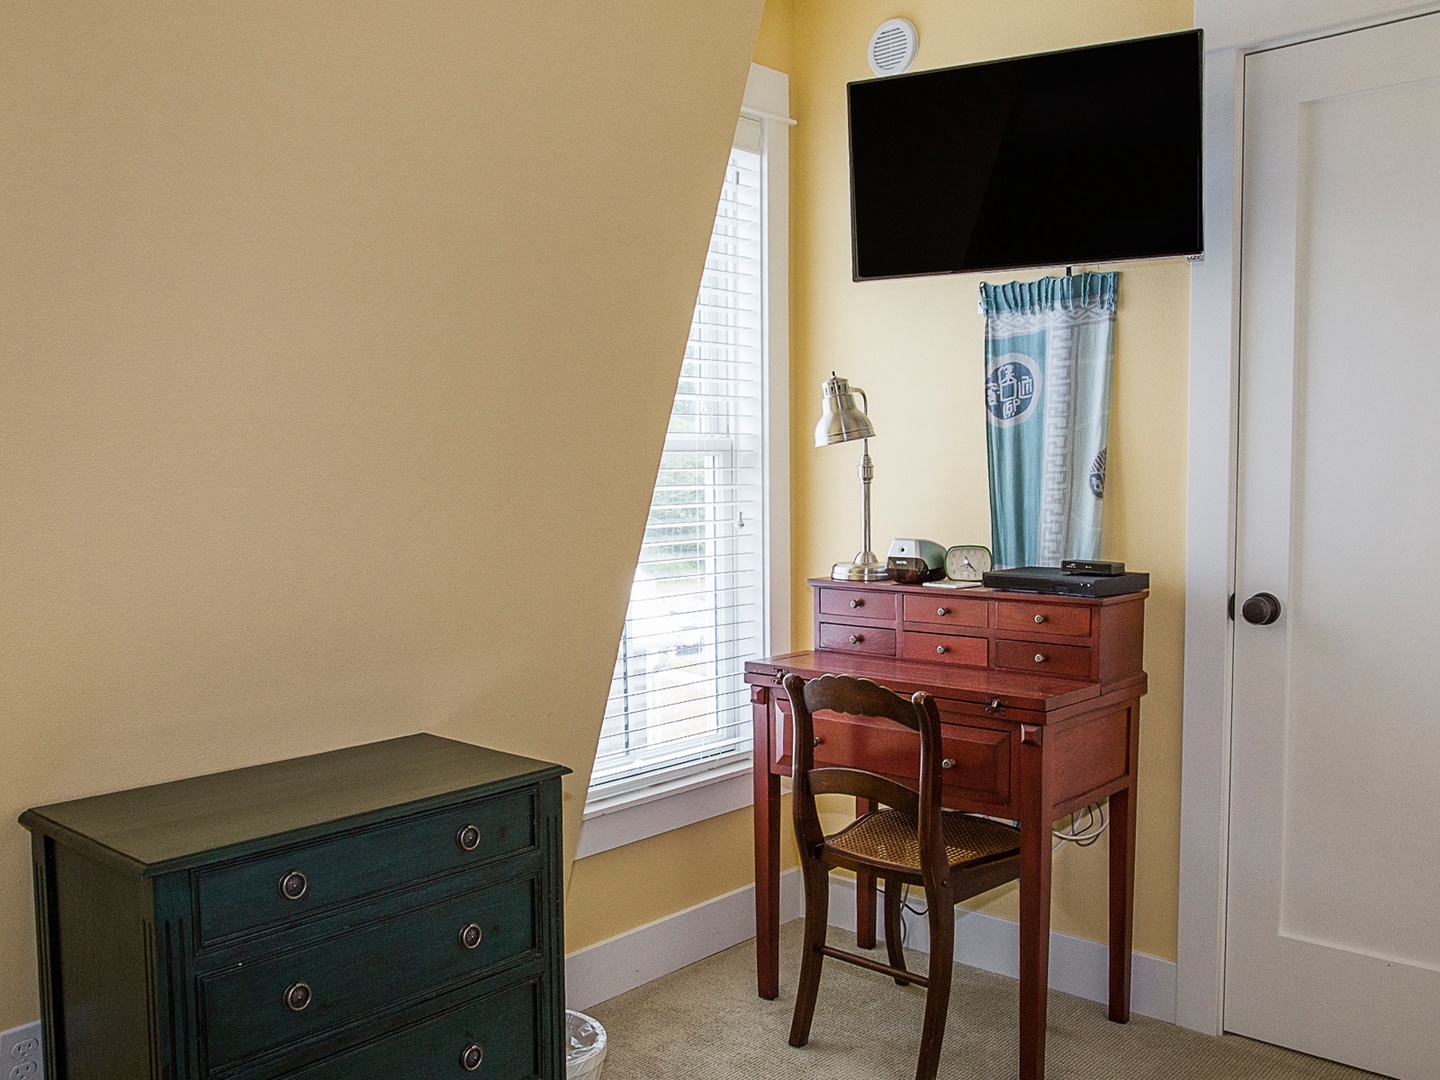 Flat screen TV in Queen bedroom